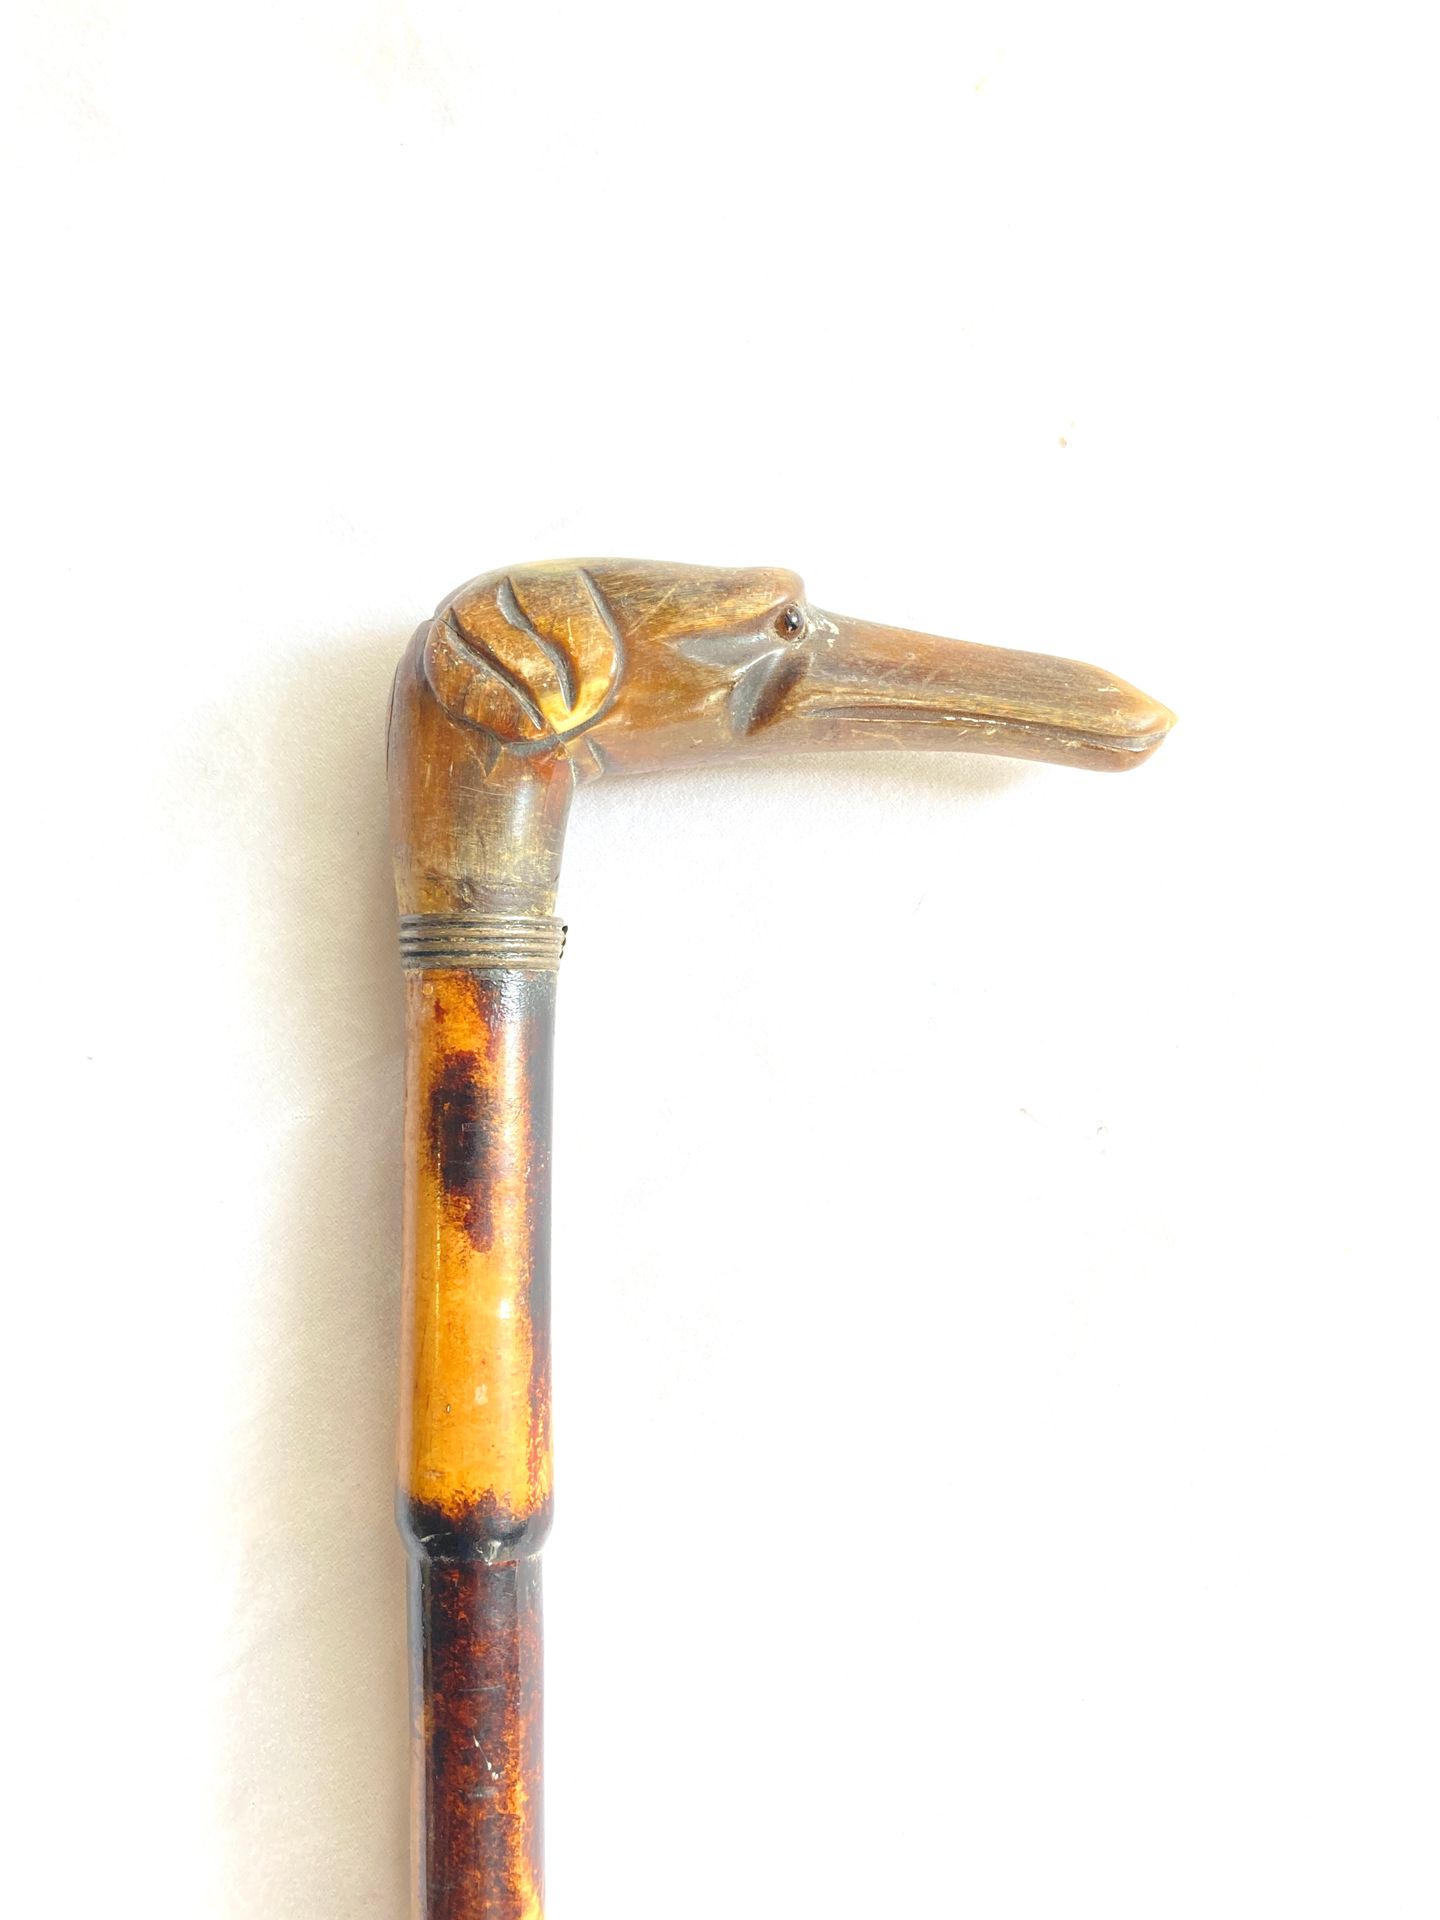 Null 染色和清漆的竹制手杖，牛角鞍座上雕刻着一个带鸭嘴的狗头，眼睛连着。后面有橡胶卡套。总长度：81.5厘米。